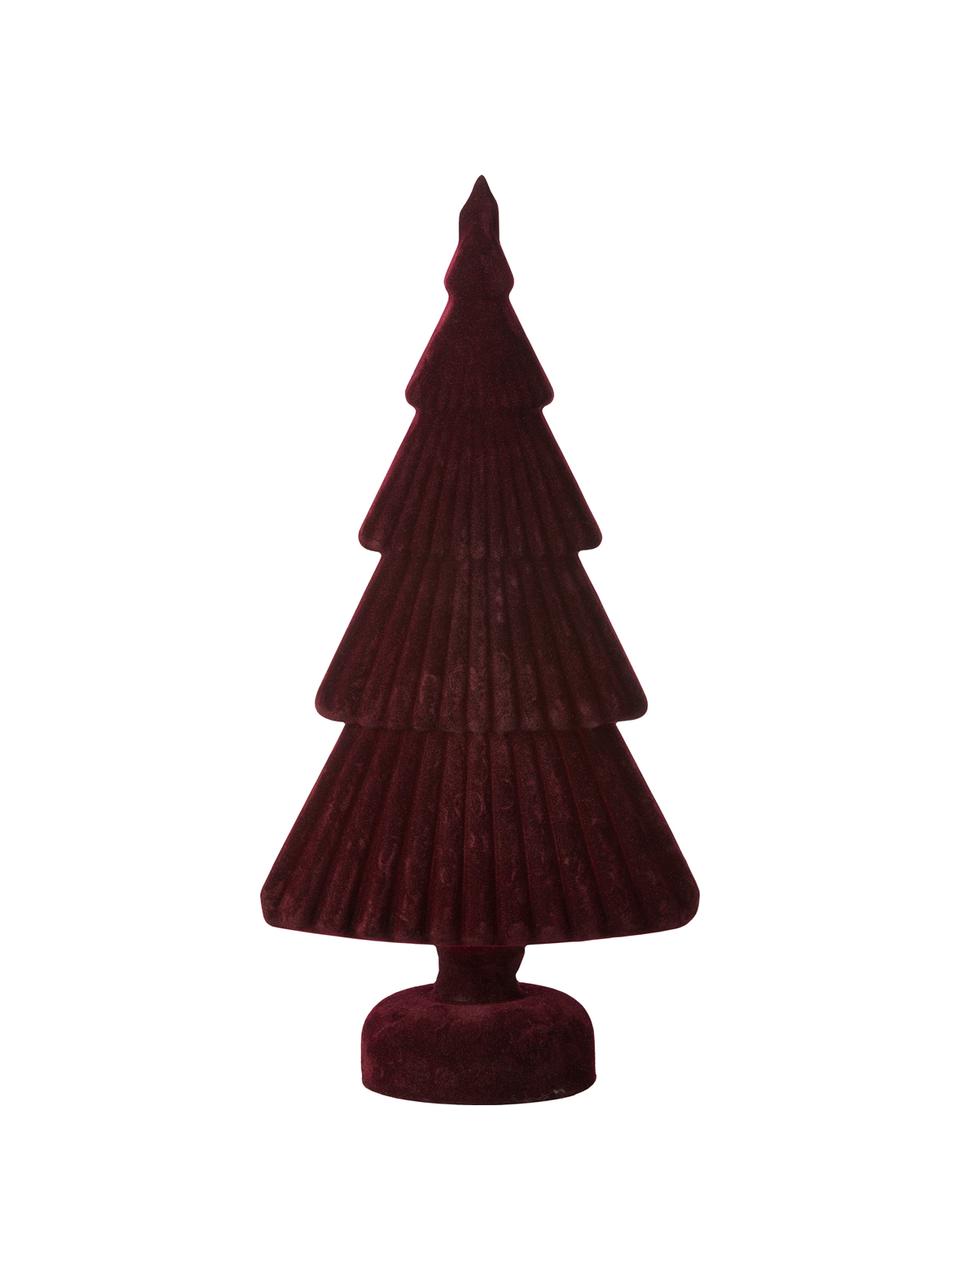 Dekorácia Velvie Christmas Tree, Tmavočervená